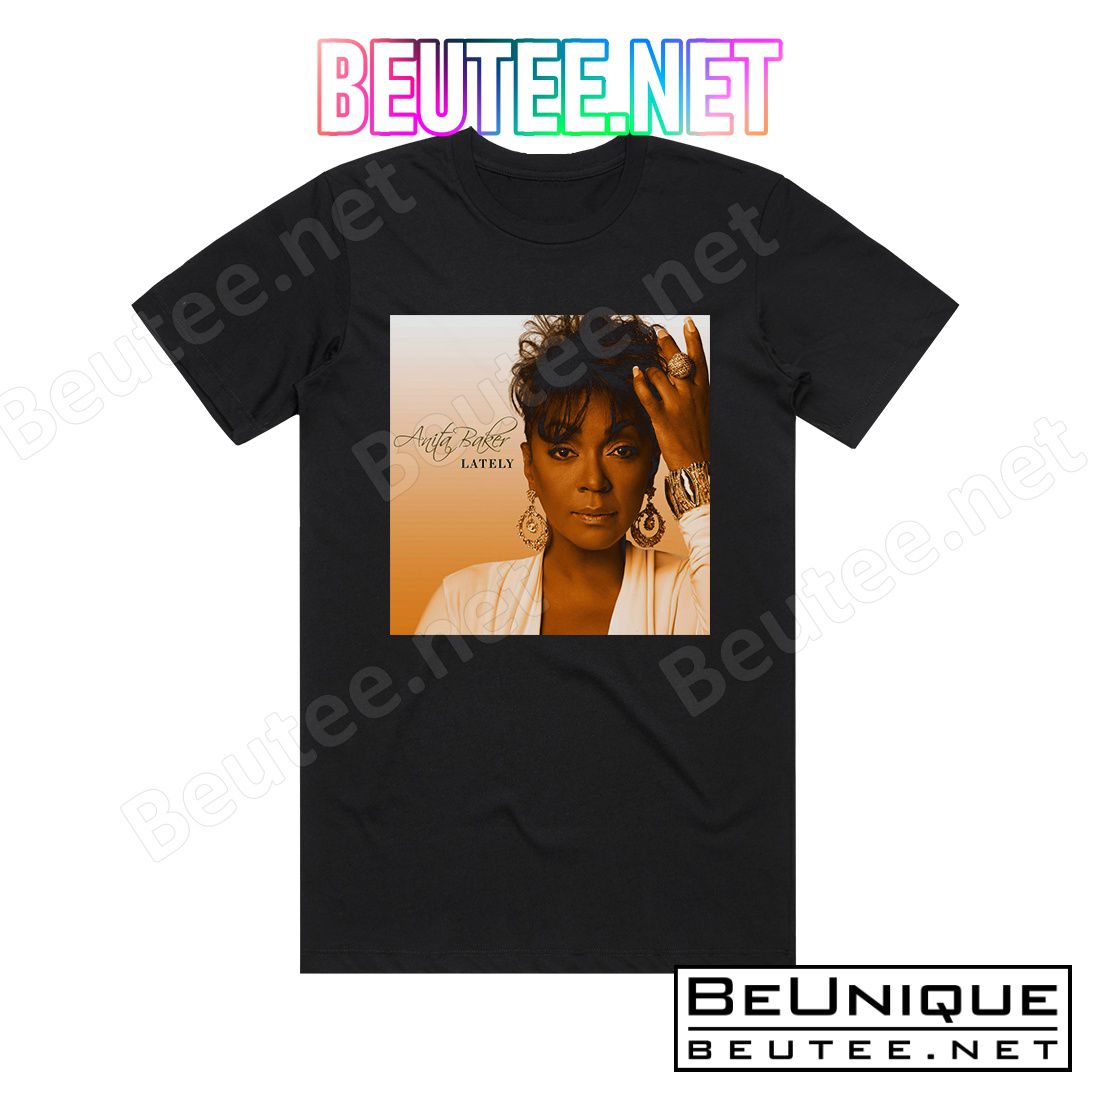 Anita Baker Lately Album Cover T-Shirt